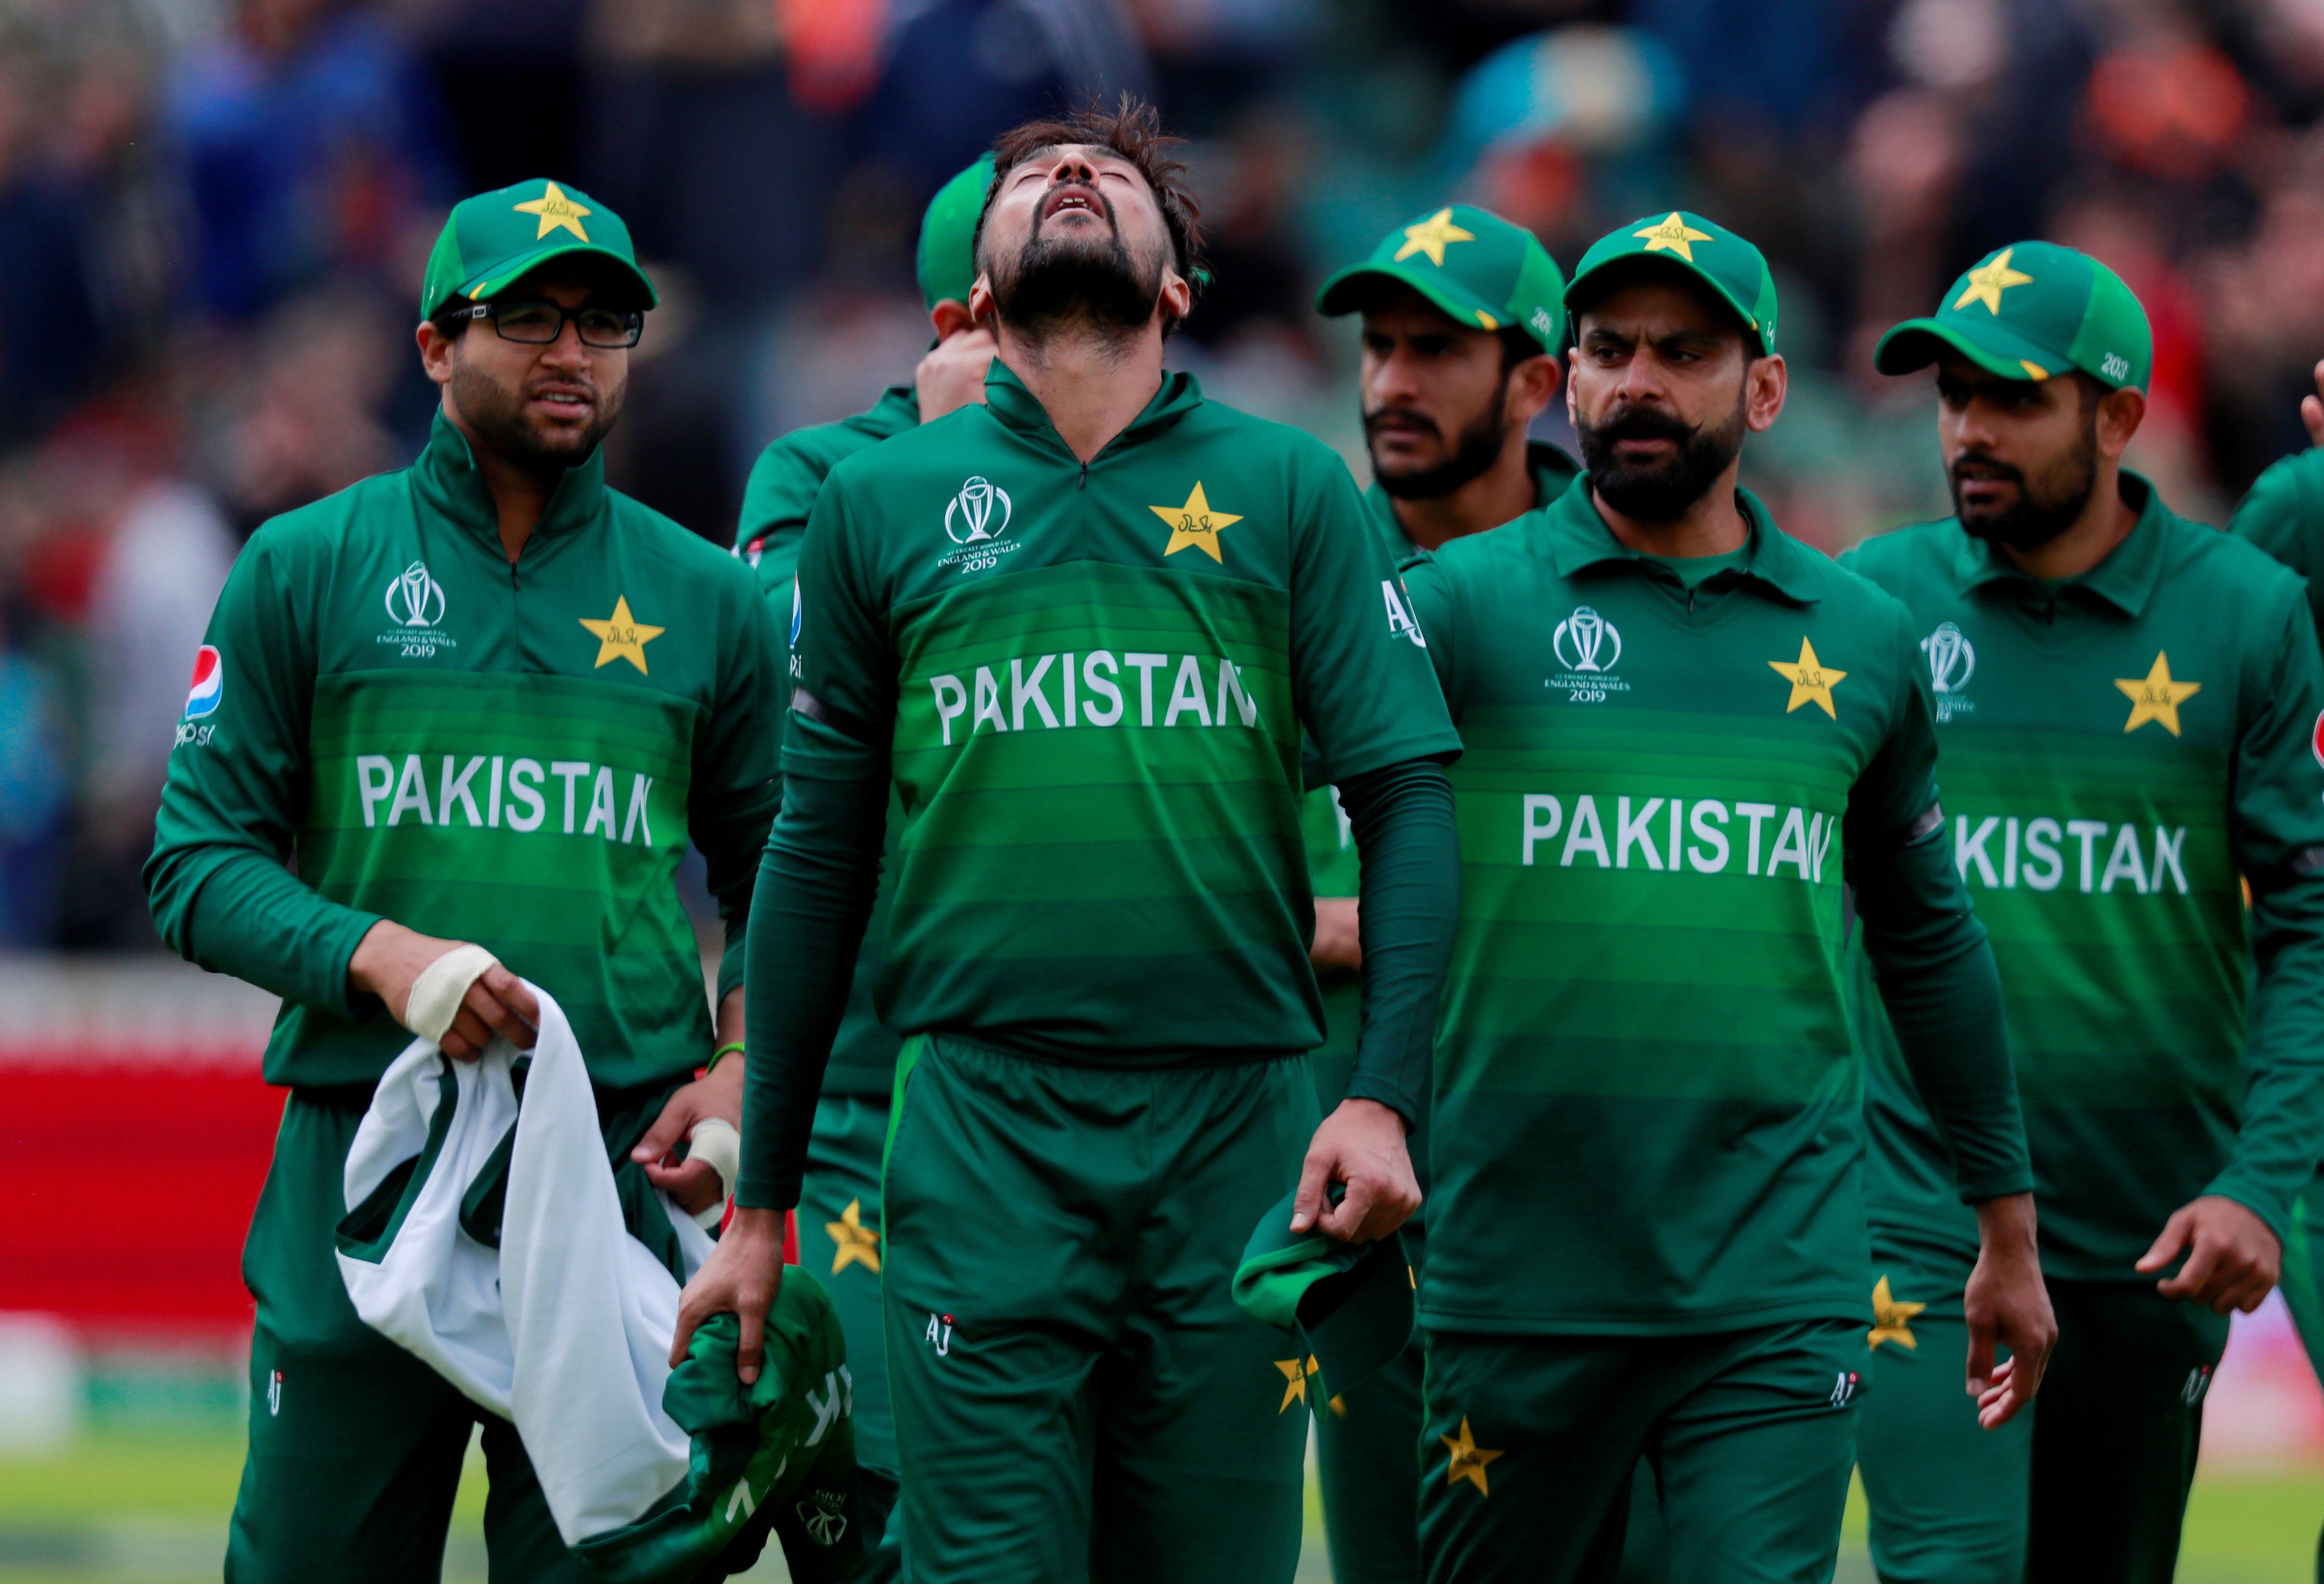 Australia vs Pakistan Live Cricket Score, World Cup 2019 In Pictures: AUS vs PAK Live ...4476 x 3050